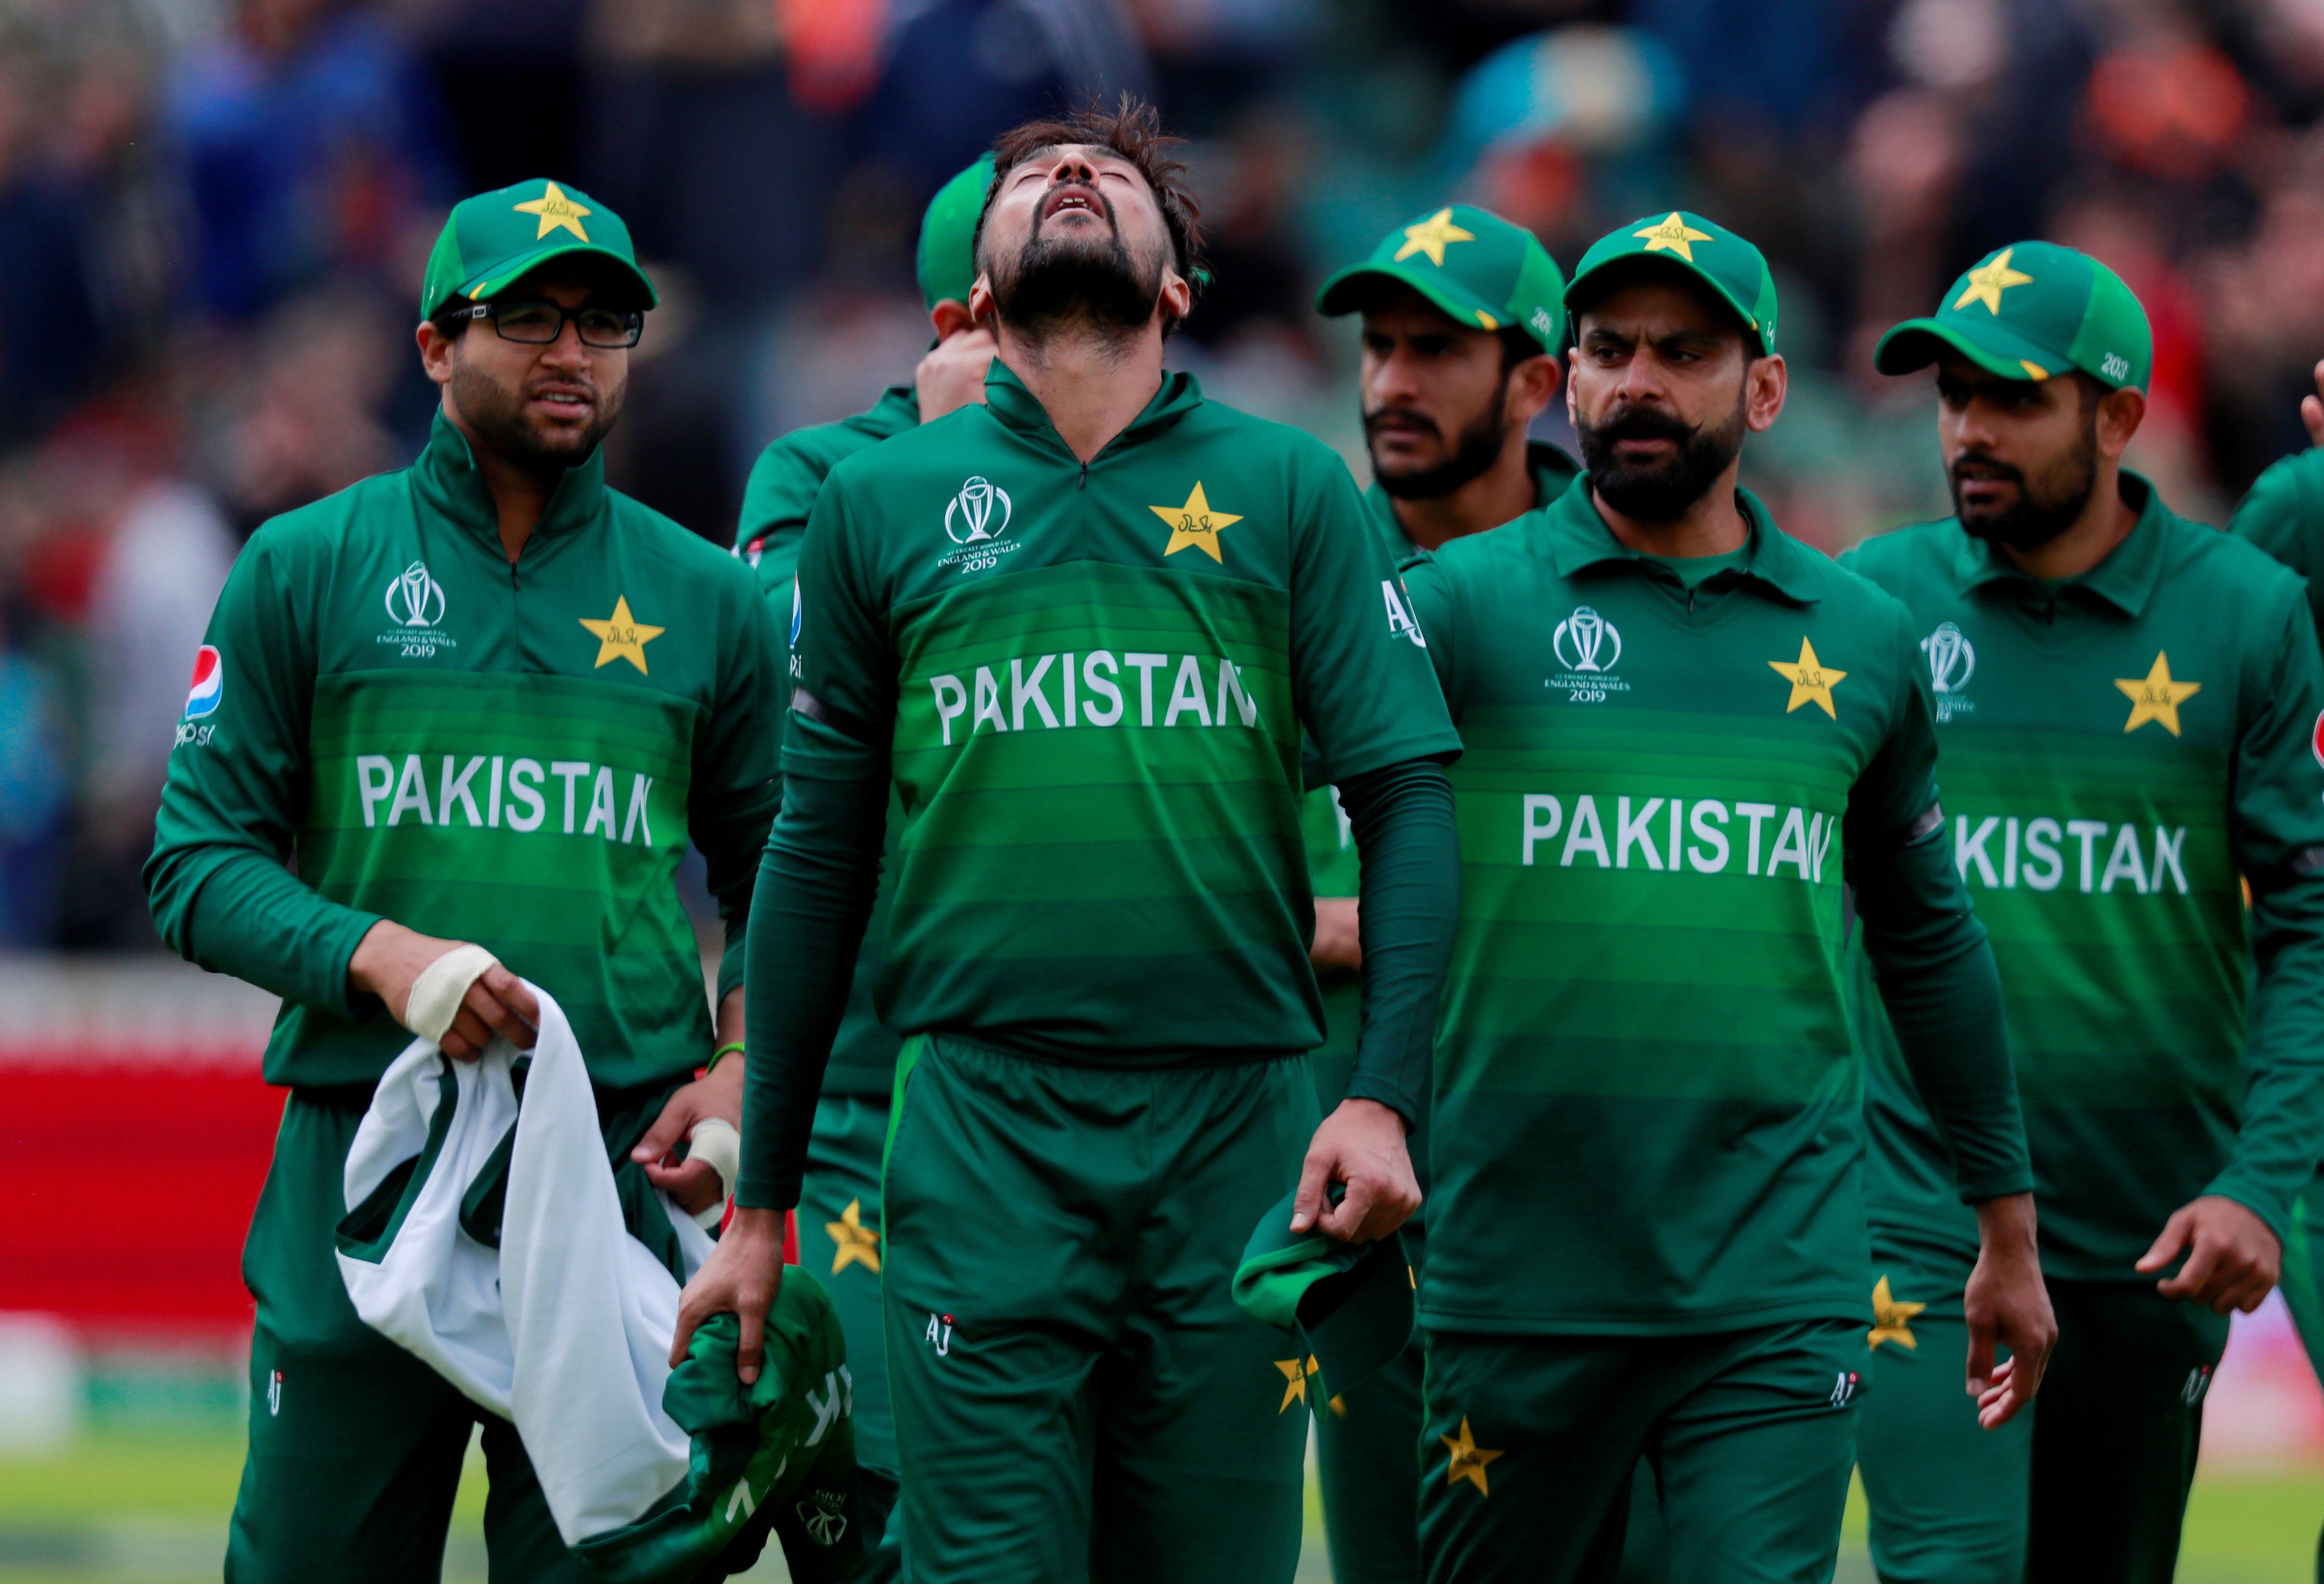 Australia vs Pakistan Live Cricket Score, World Cup 2019 In Pictures: AUS vs PAK Live ...4476 x 3050